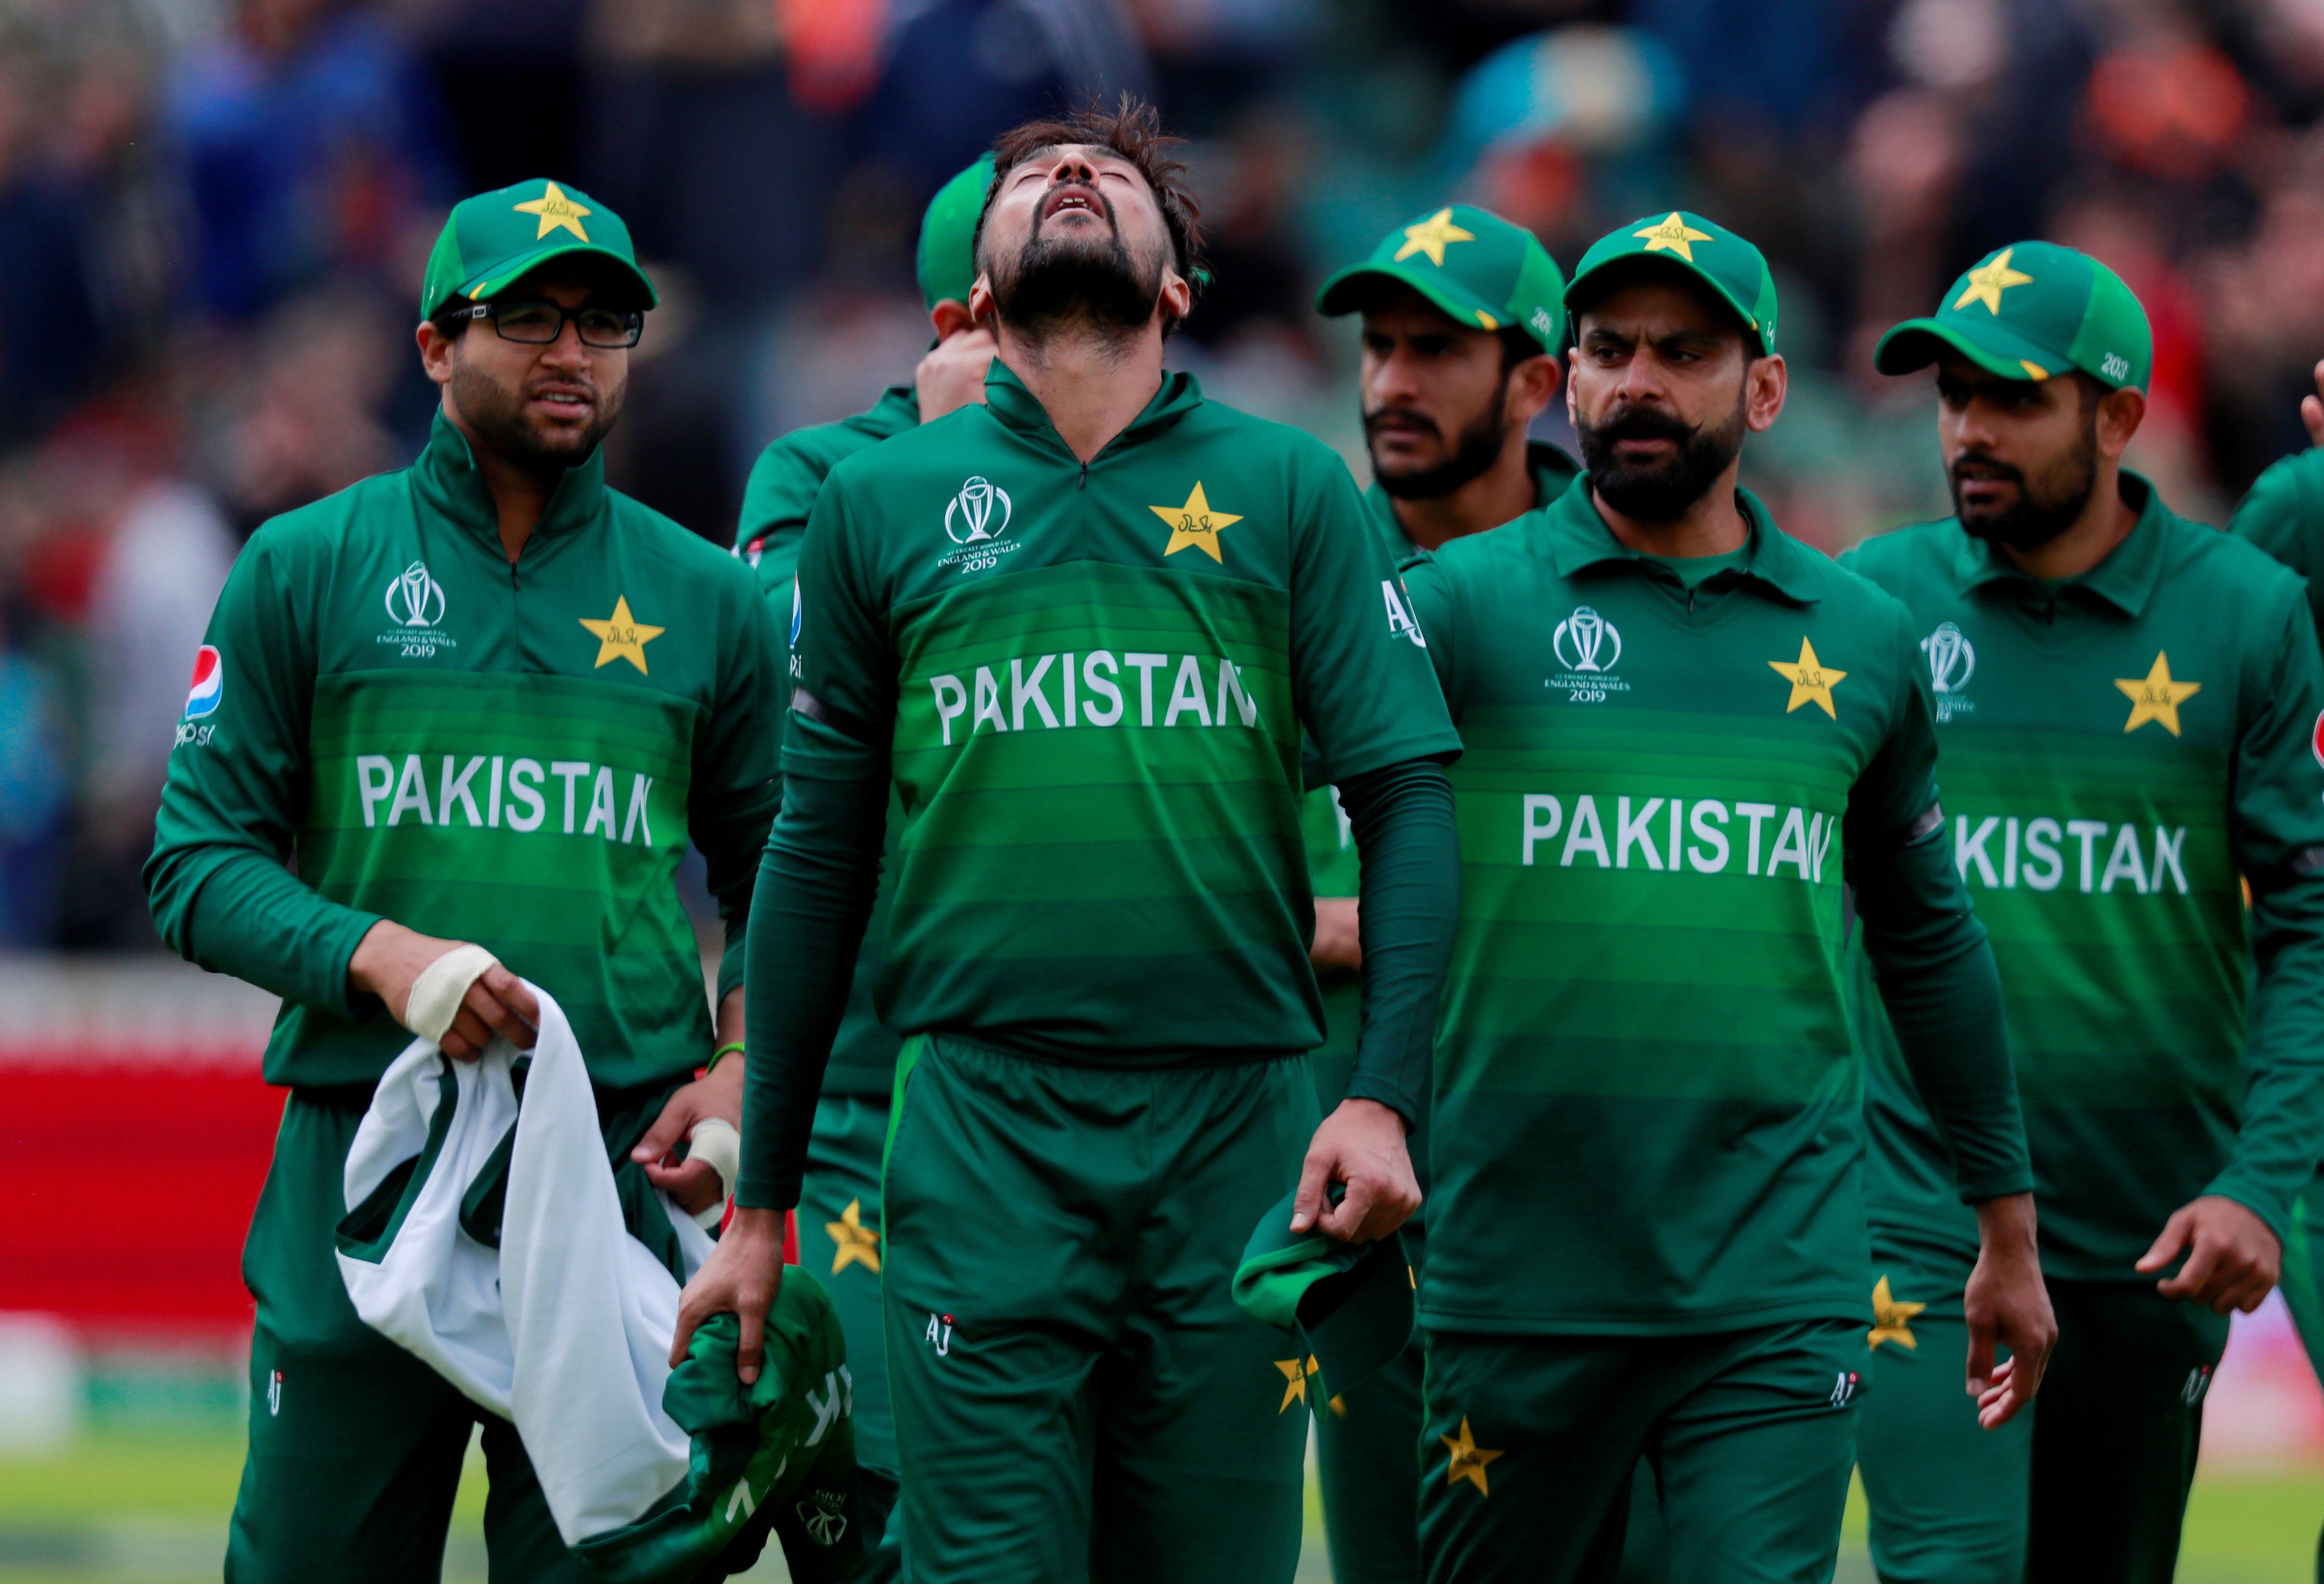 Australia vs Pakistan Live Cricket Score, World Cup 2019 In Pictures: AUS vs PAK Live ...4476 x 3050